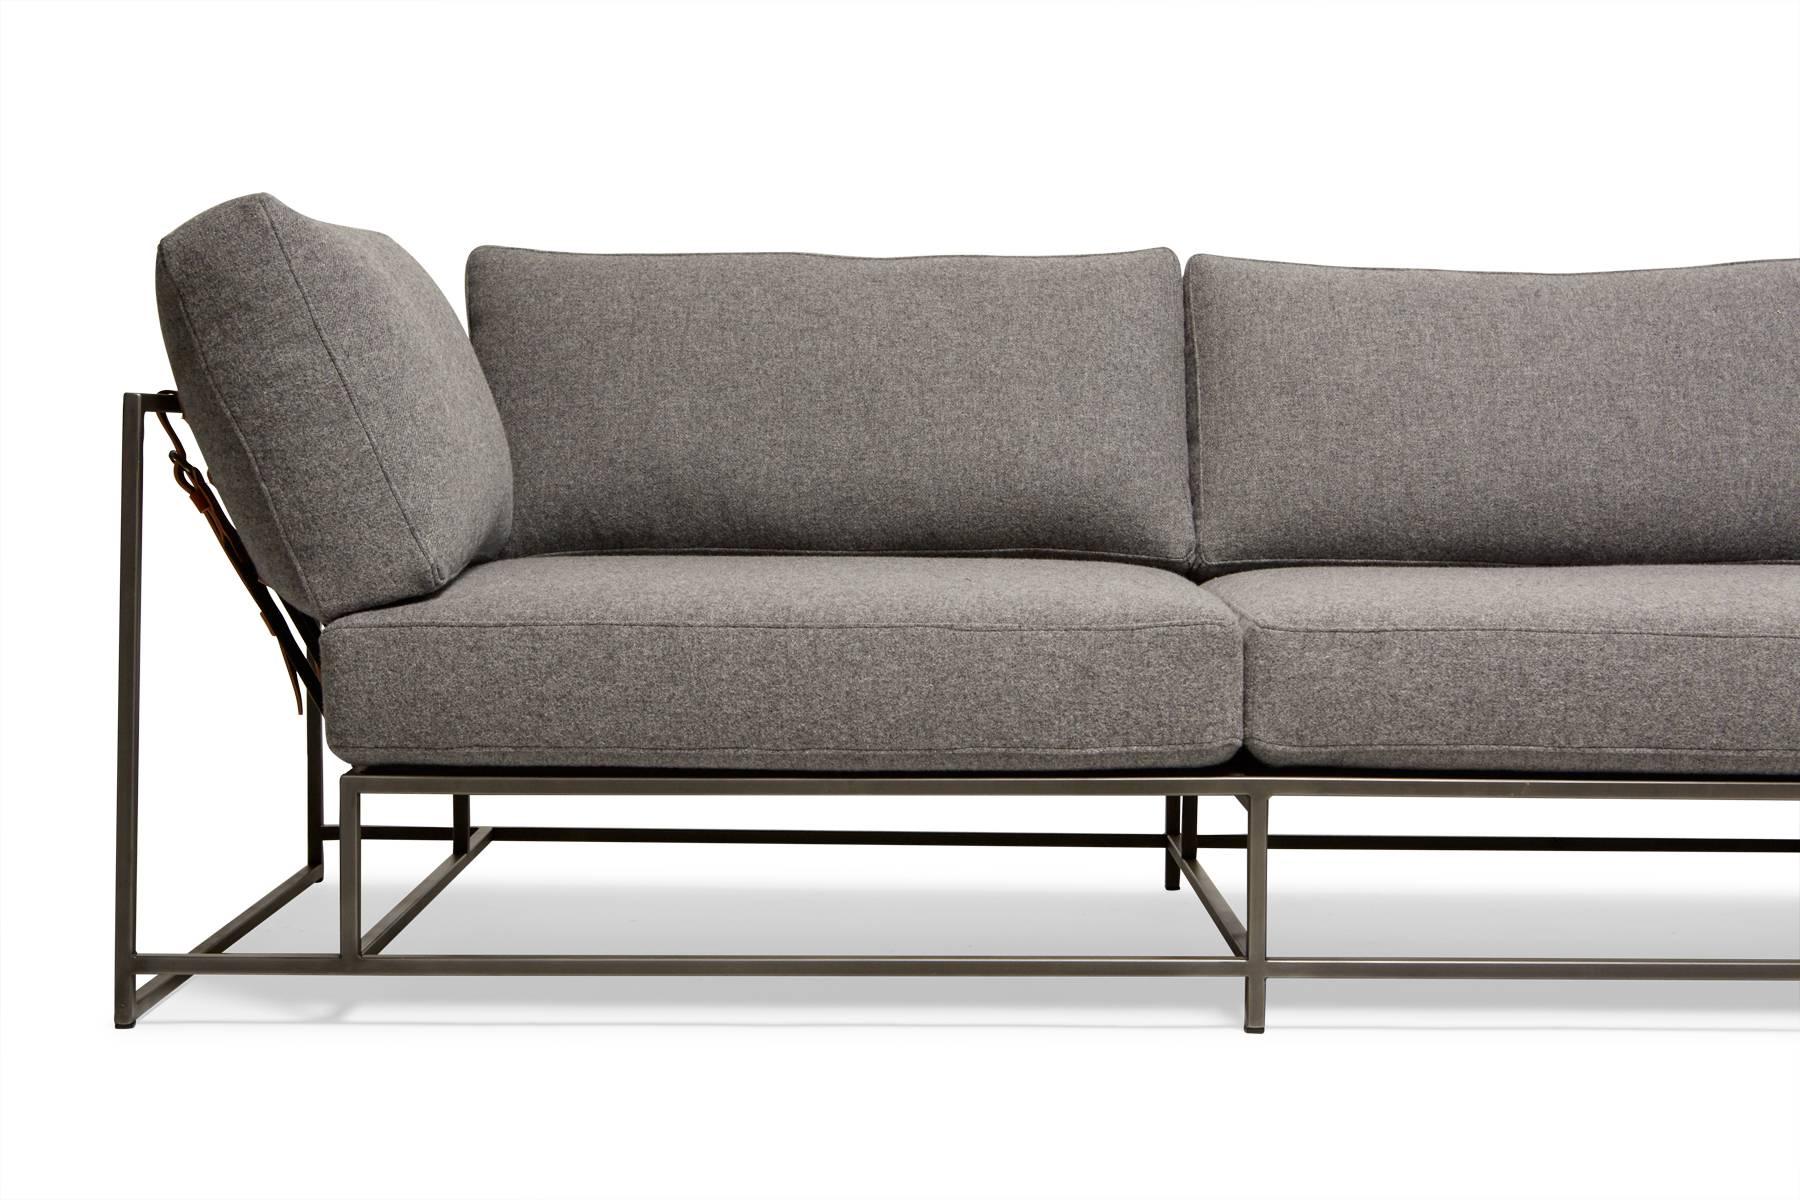 Diese Couchgarnitur verfügt über eine extrabreite Liegefläche, damit die ganze Familie zusammen sitzen kann. Die Rahmen sind aus zwei Teilen gefertigt und mit Lederschlaufen versehen, um sie miteinander zu verbinden. Die Bezüge sind mit weicher